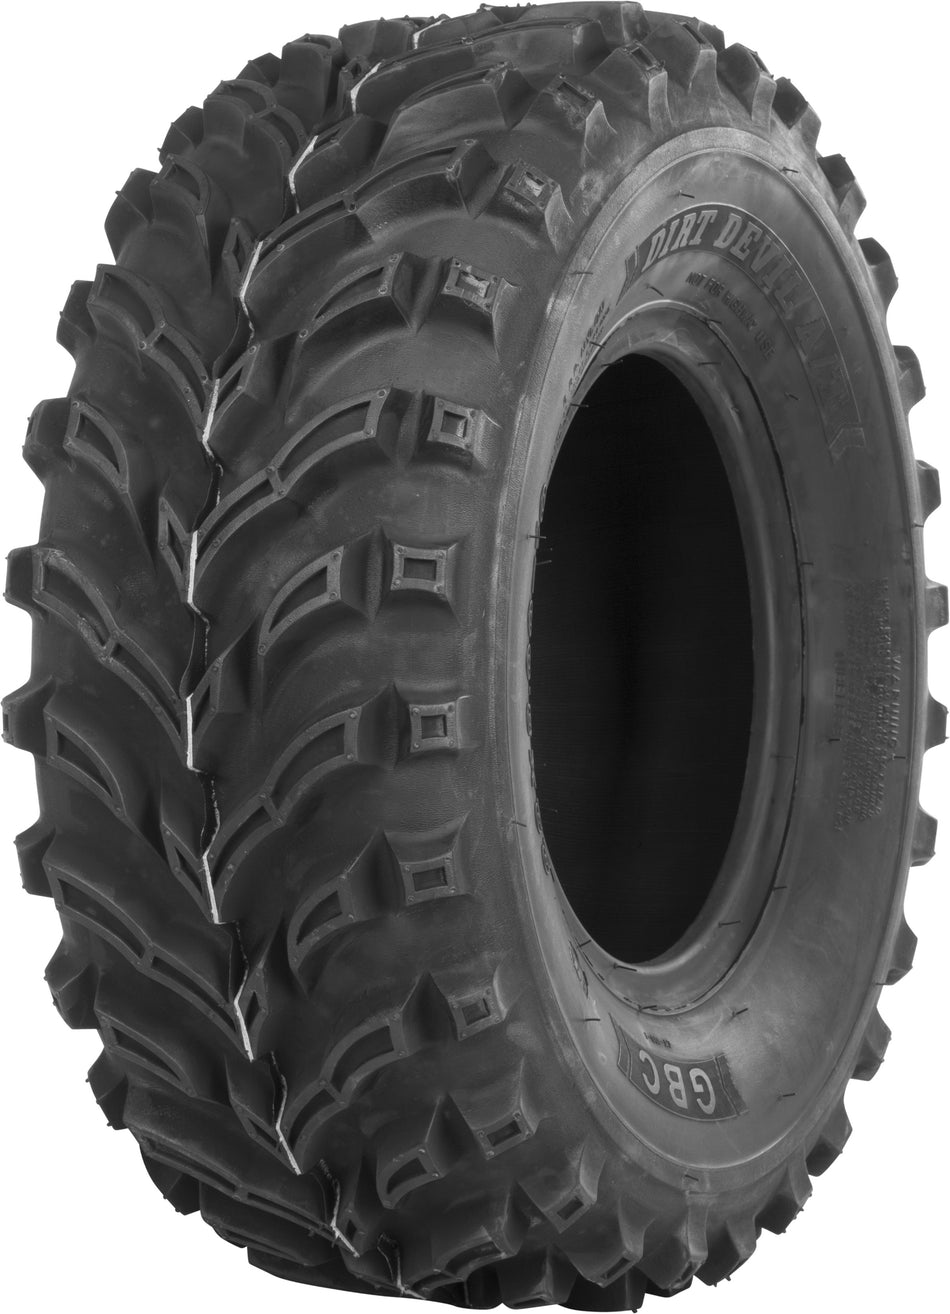 GBC Tire Dirt Devil A/T Front 23x8-10 Bias Lr-300lbs AR1029